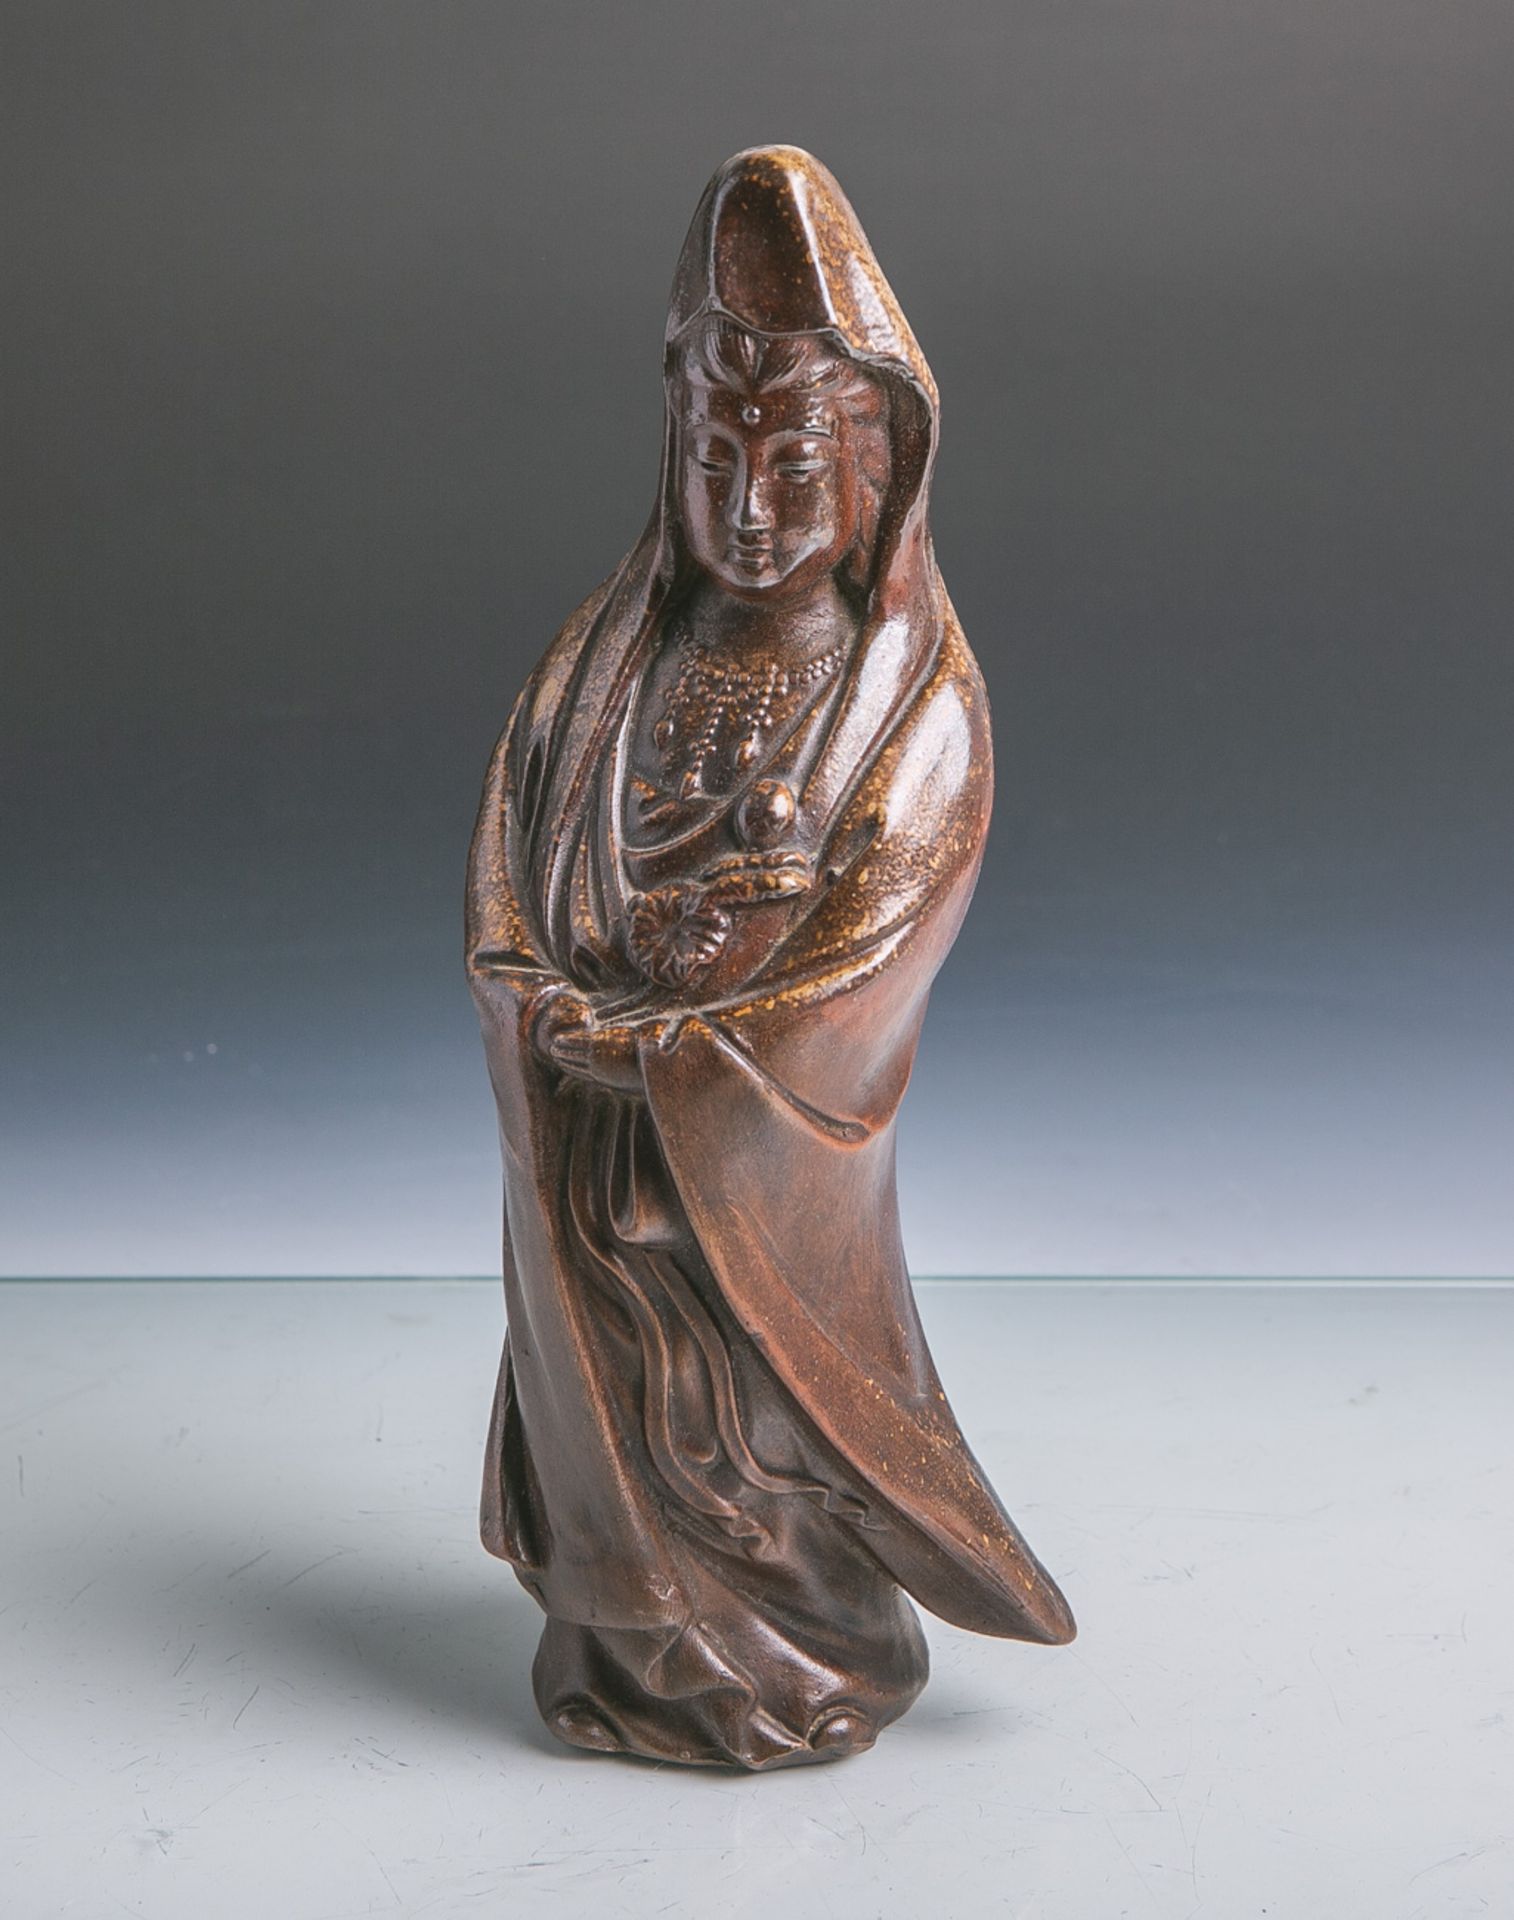 Buddhistische Figur aus Keramik (wohl Japan, Alter unbekannt), stehende Figur eines